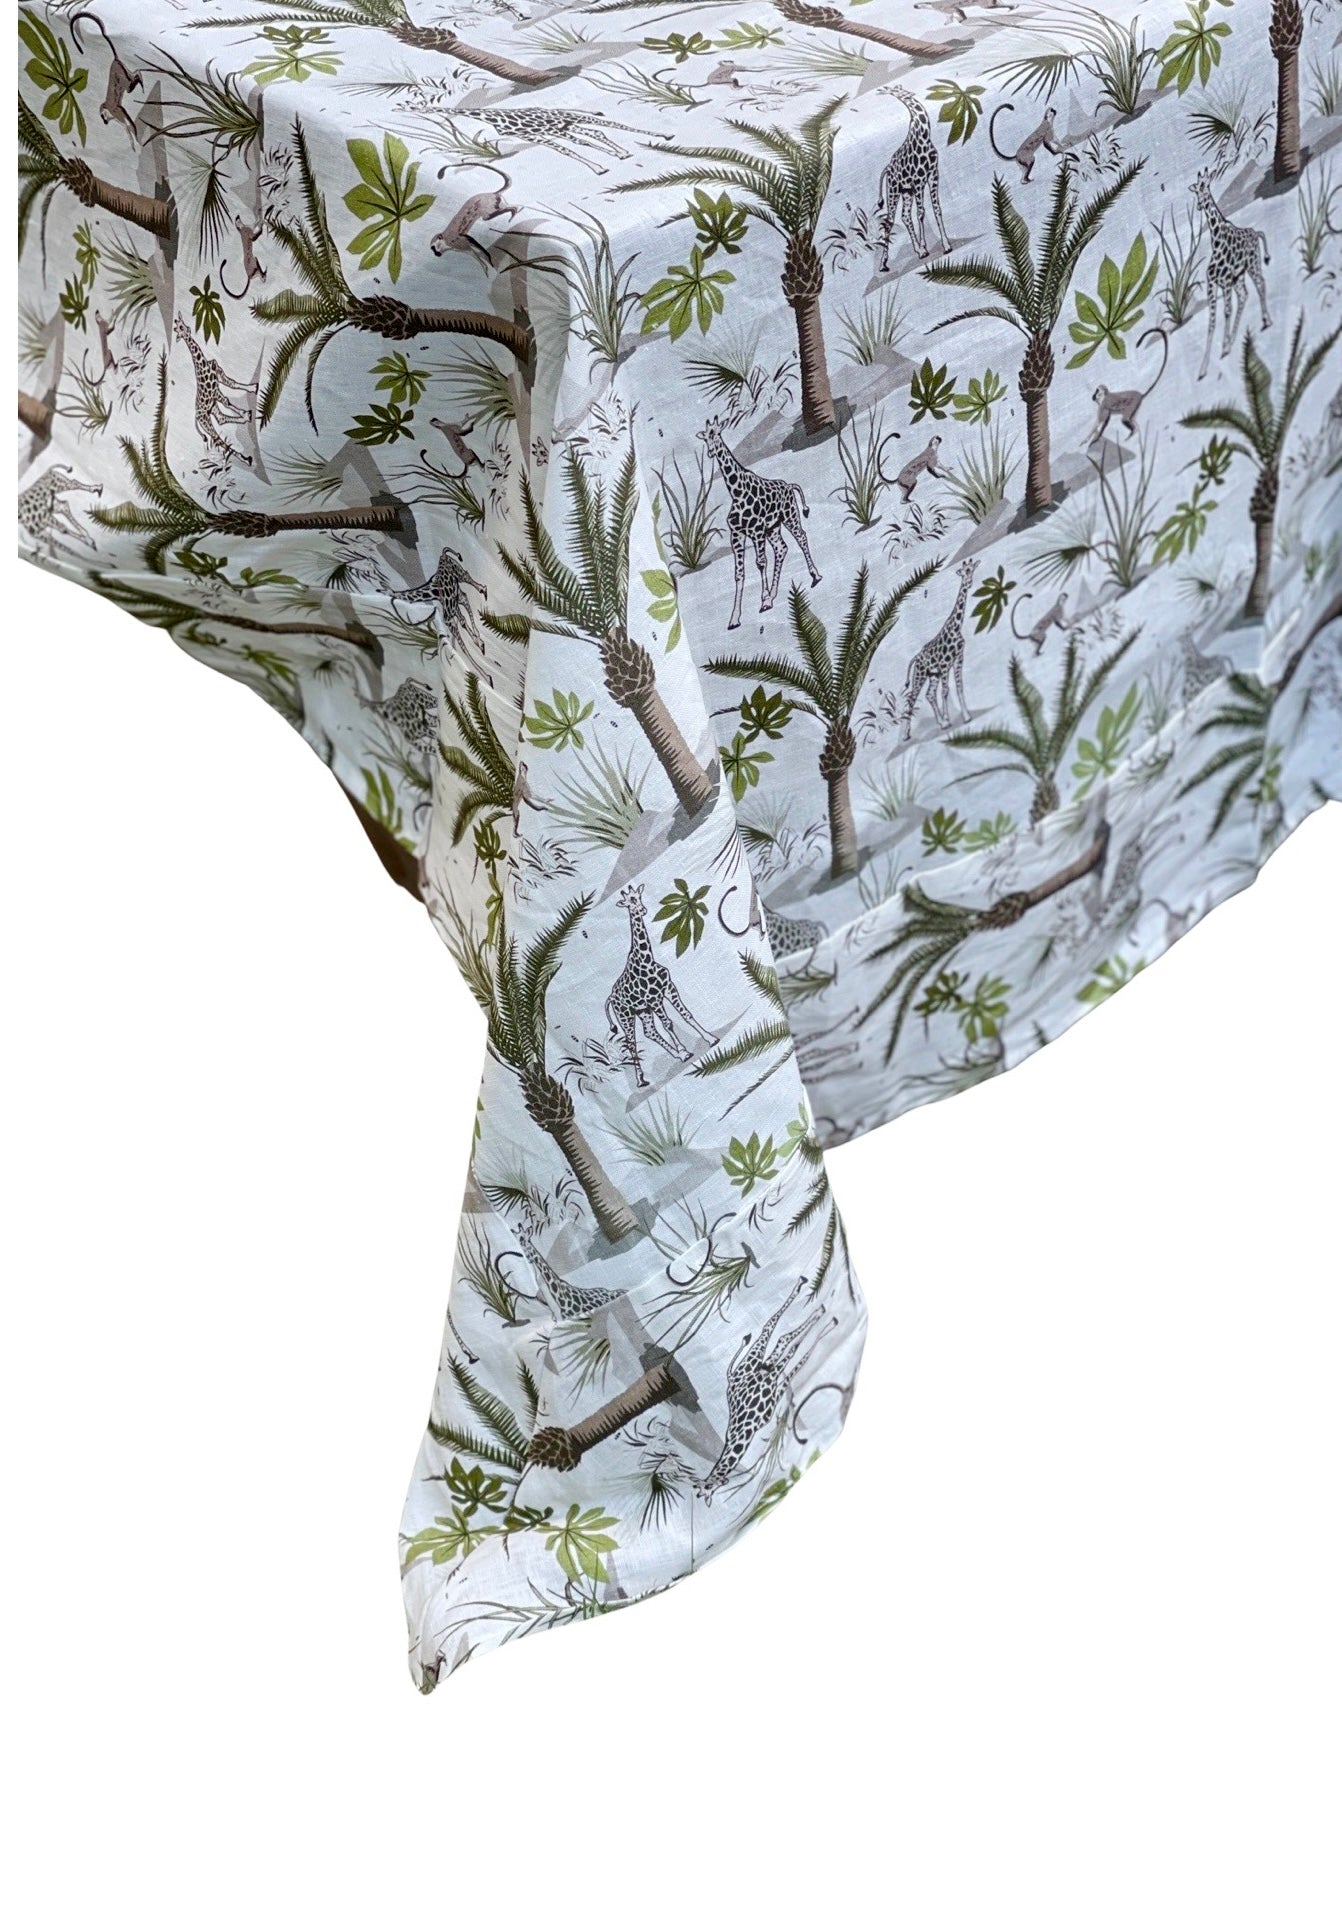 100% Linen Tablecloth - "It's a Jungle"